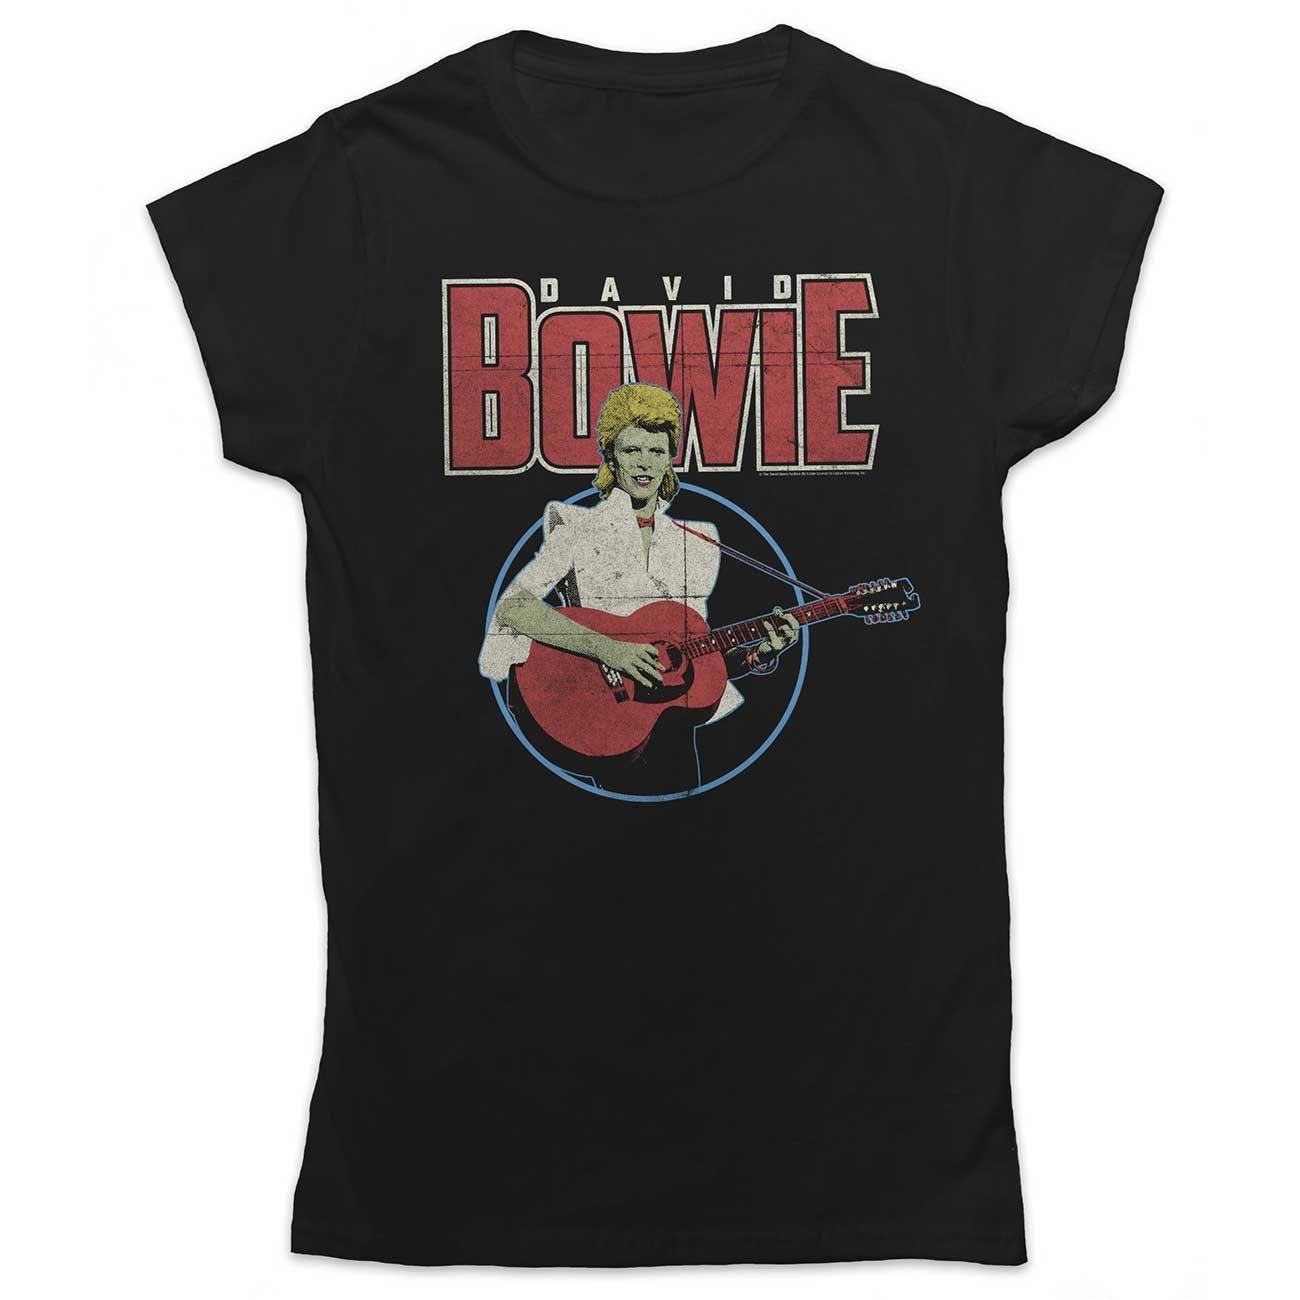 (デヴィッド・ボウイ) David Bowie オフィシャル商品 レディース Acoustic Bootleg Tシャツ 半袖 トップス 【海外通販】